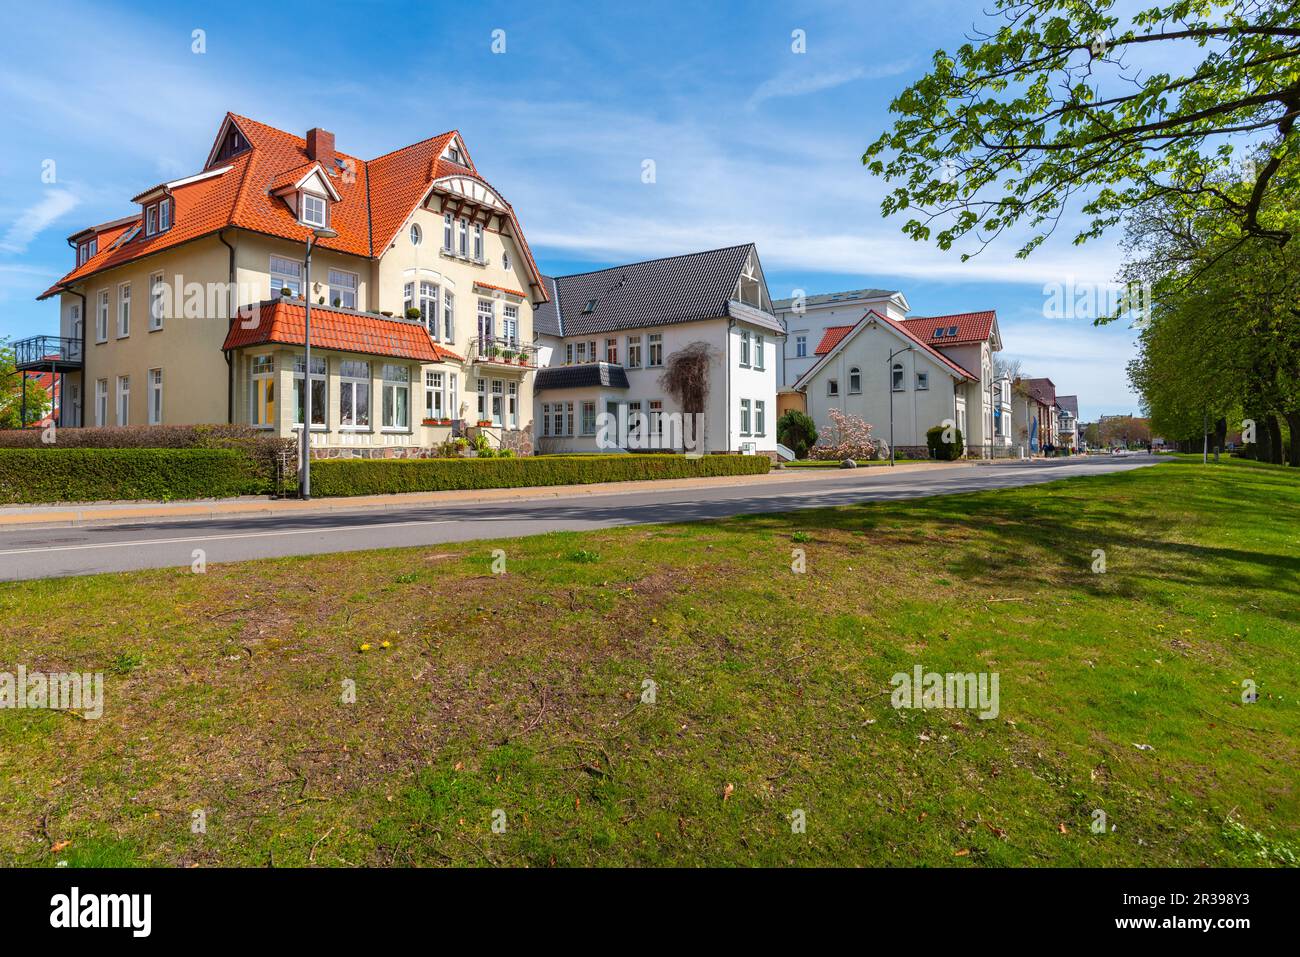 Villas à Stranstrasse, ville de Waren, Mueritz, Mecklembourg-Poméranie occidentale, Allemagne de l'est, Europe Banque D'Images